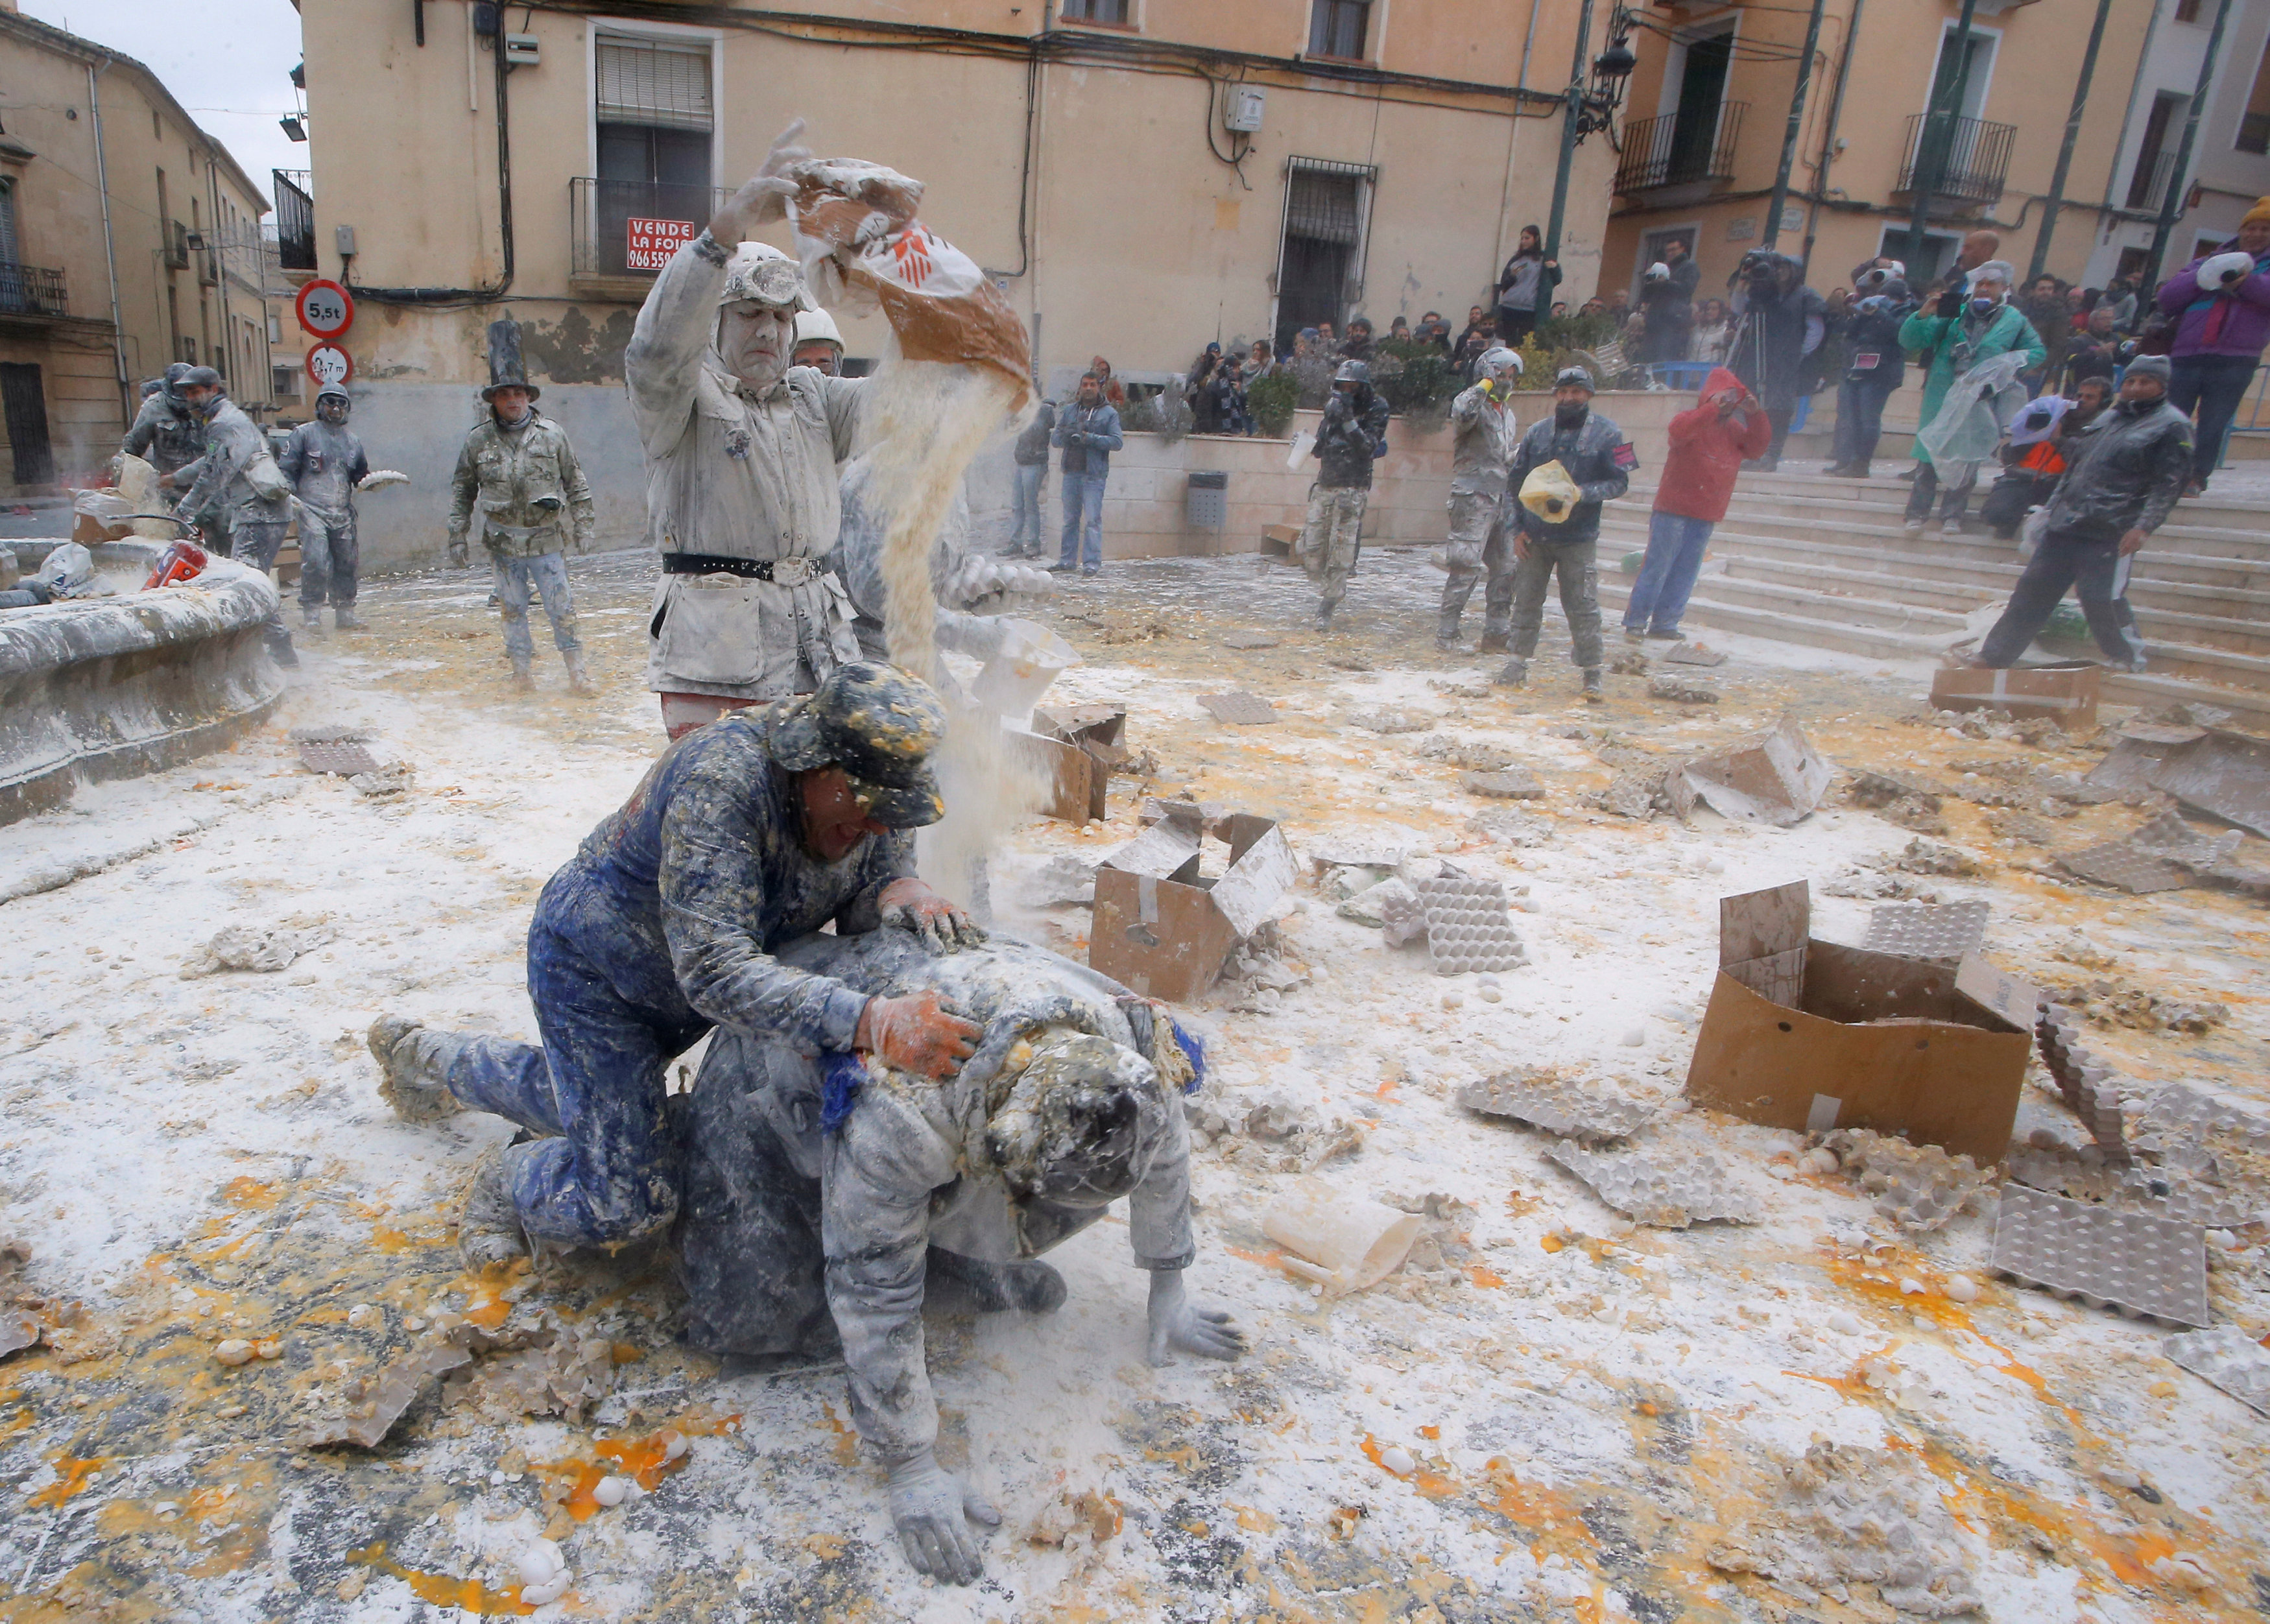 Spain's 'flour war' : the battle of Enfarinats